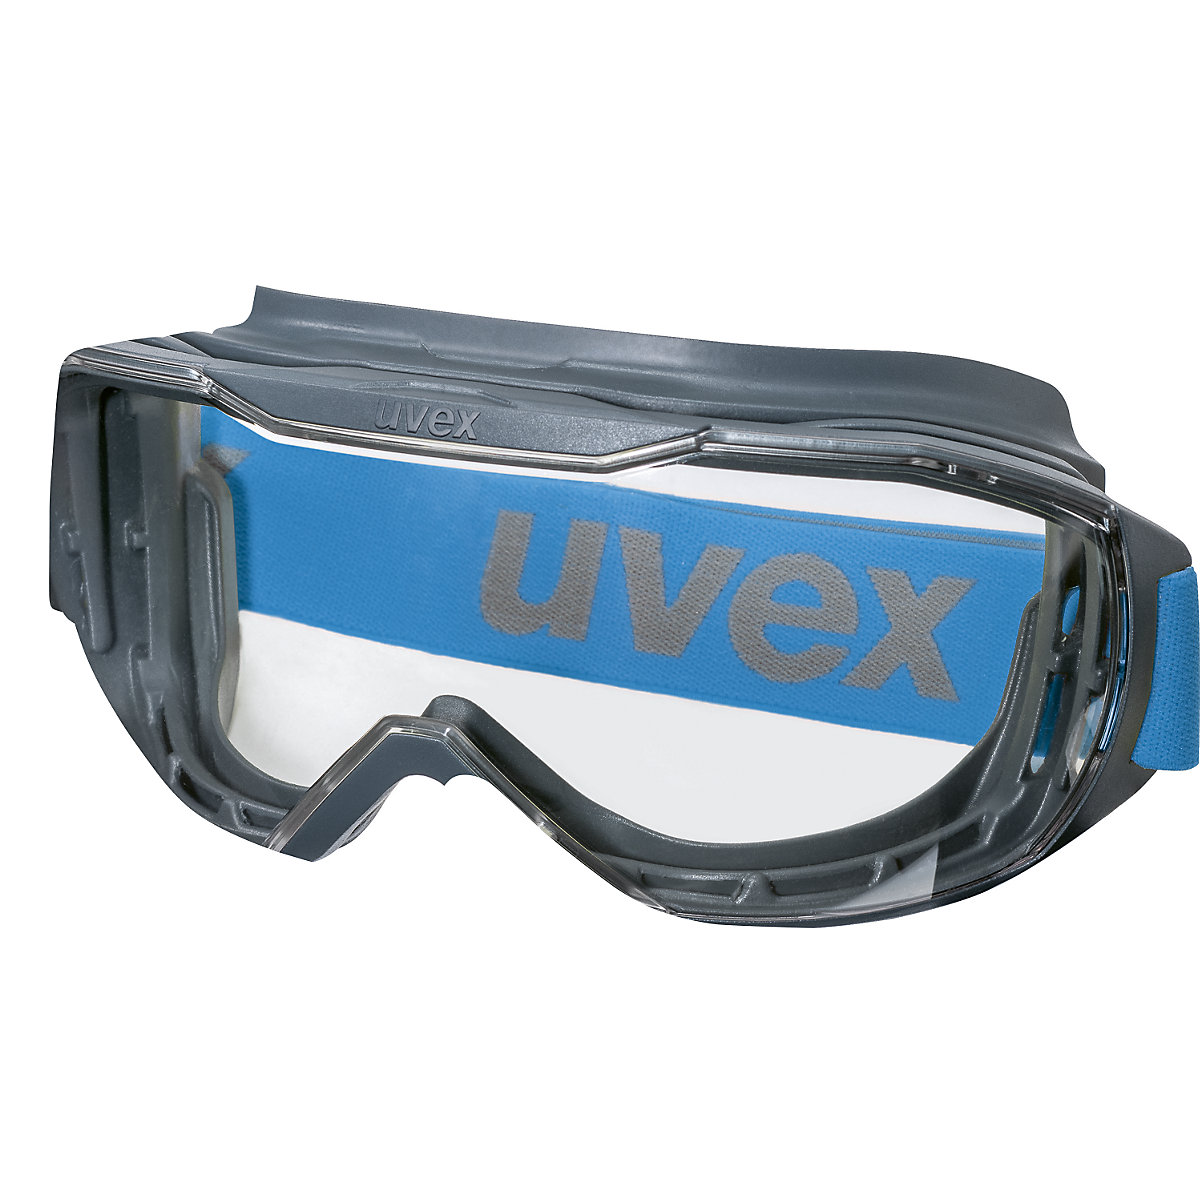 Lunettes de protection intégrale megasonic - Uvex